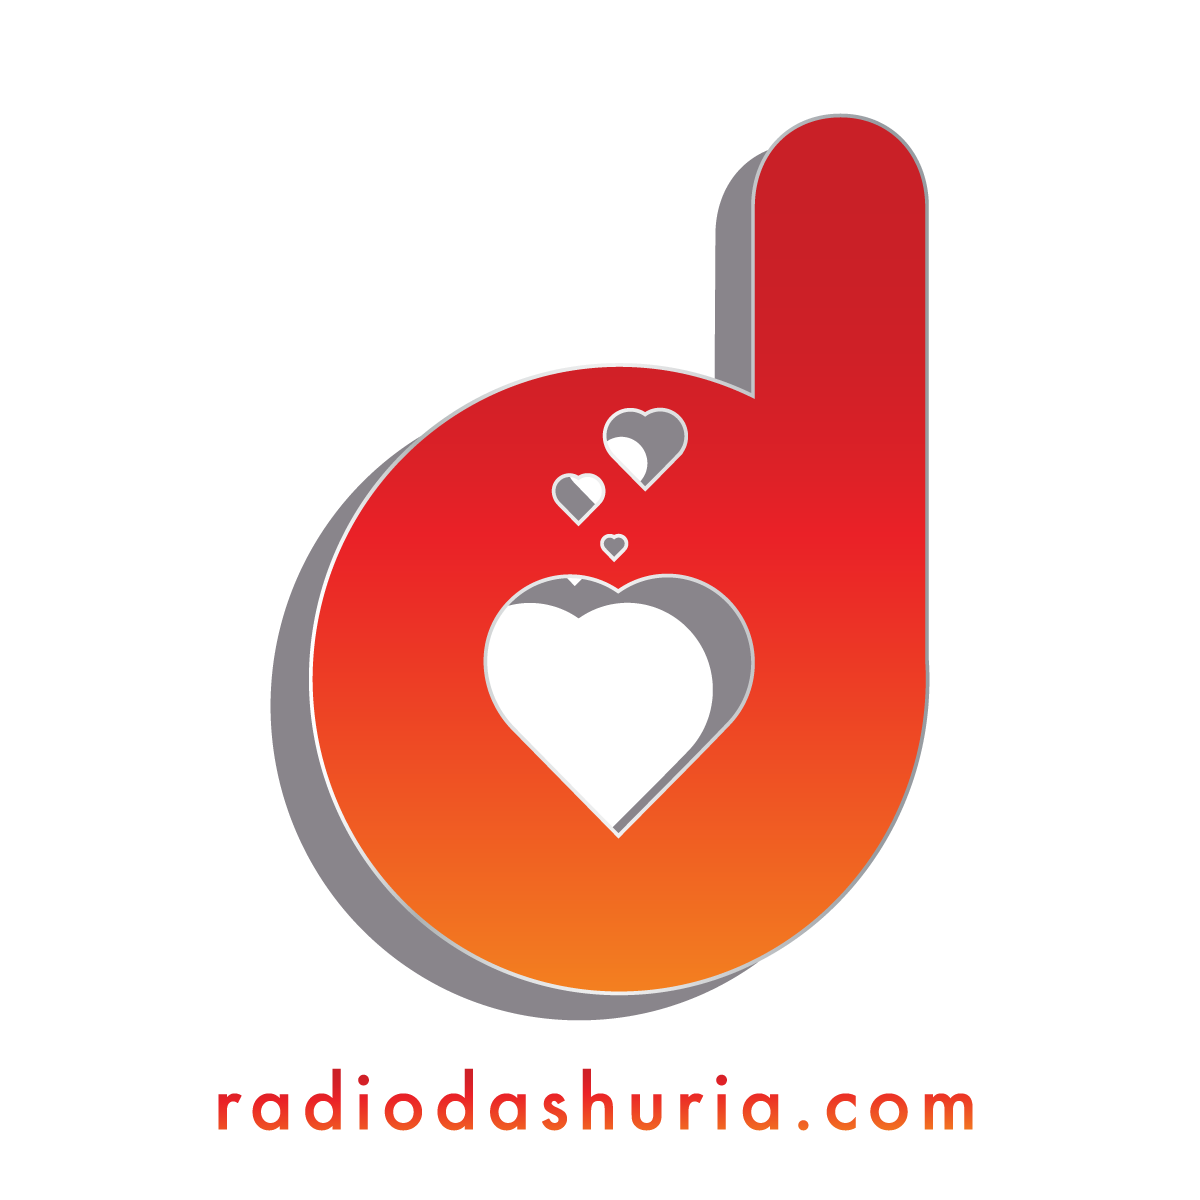 DashuriaRadio